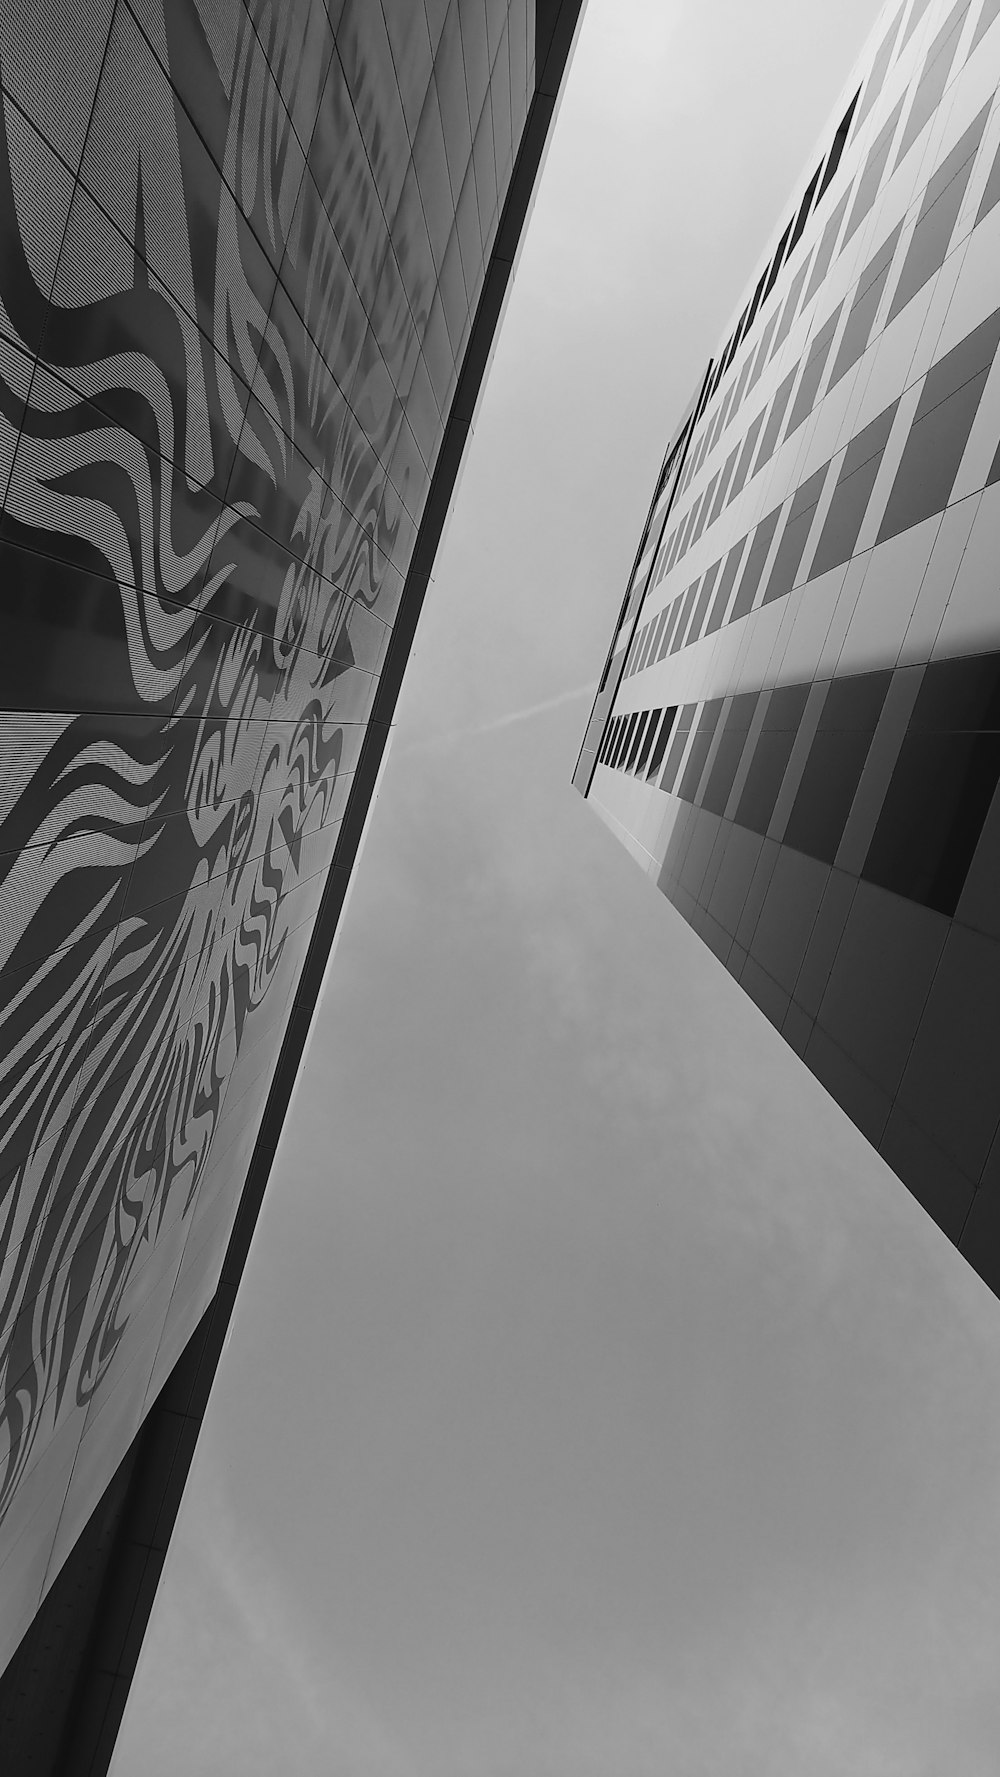 두 건물의 흑백 사진